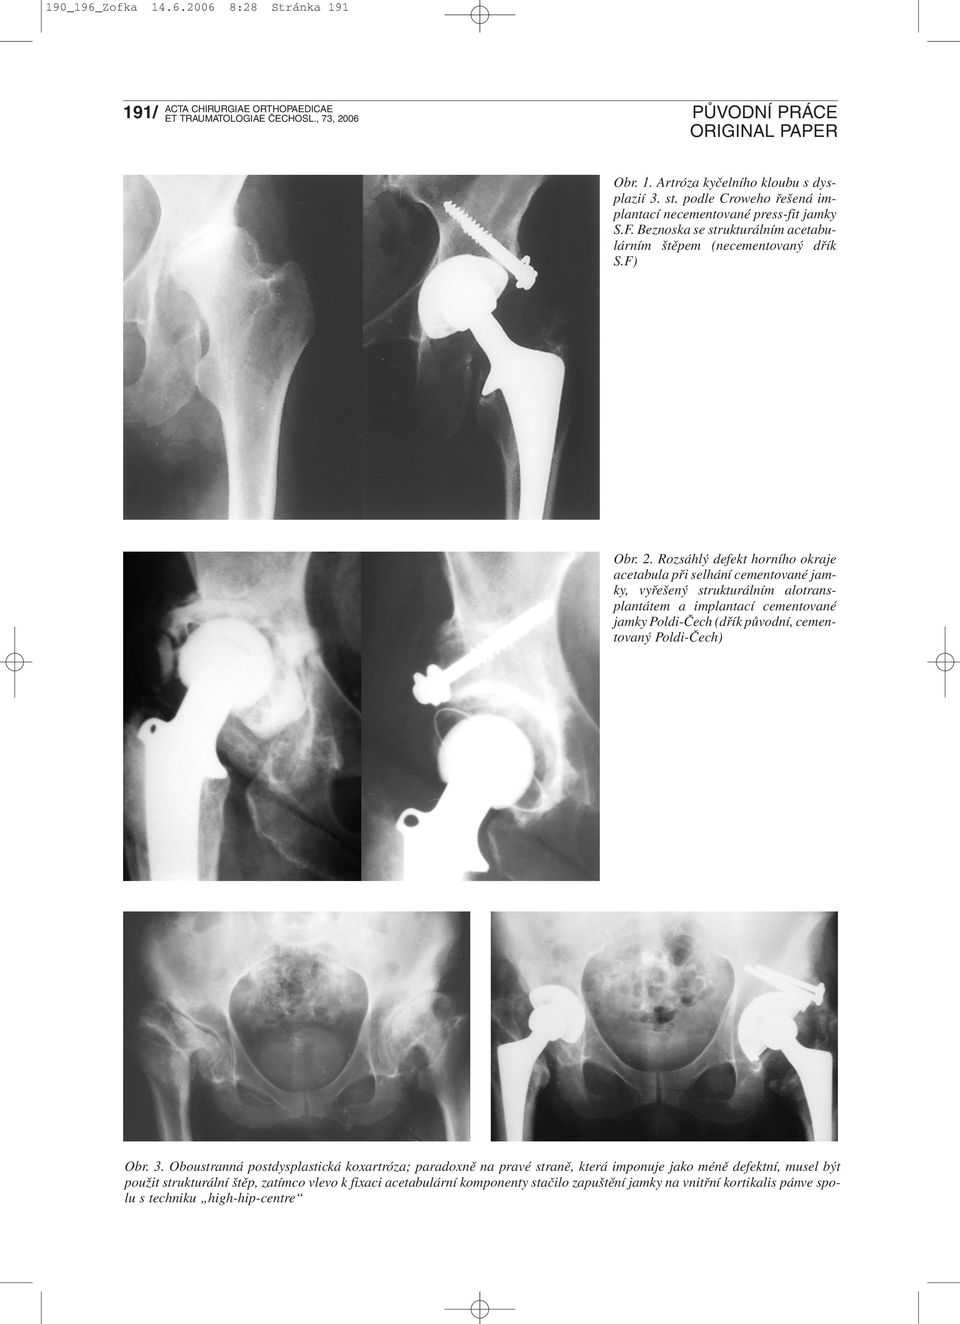 Rozsáhlý defekt horního okraje acetabula při selhání cementované jamky, vyřešený strukturálním alotransplantátem a implantací cementované jamky Poldi-Čech (dřík původní,